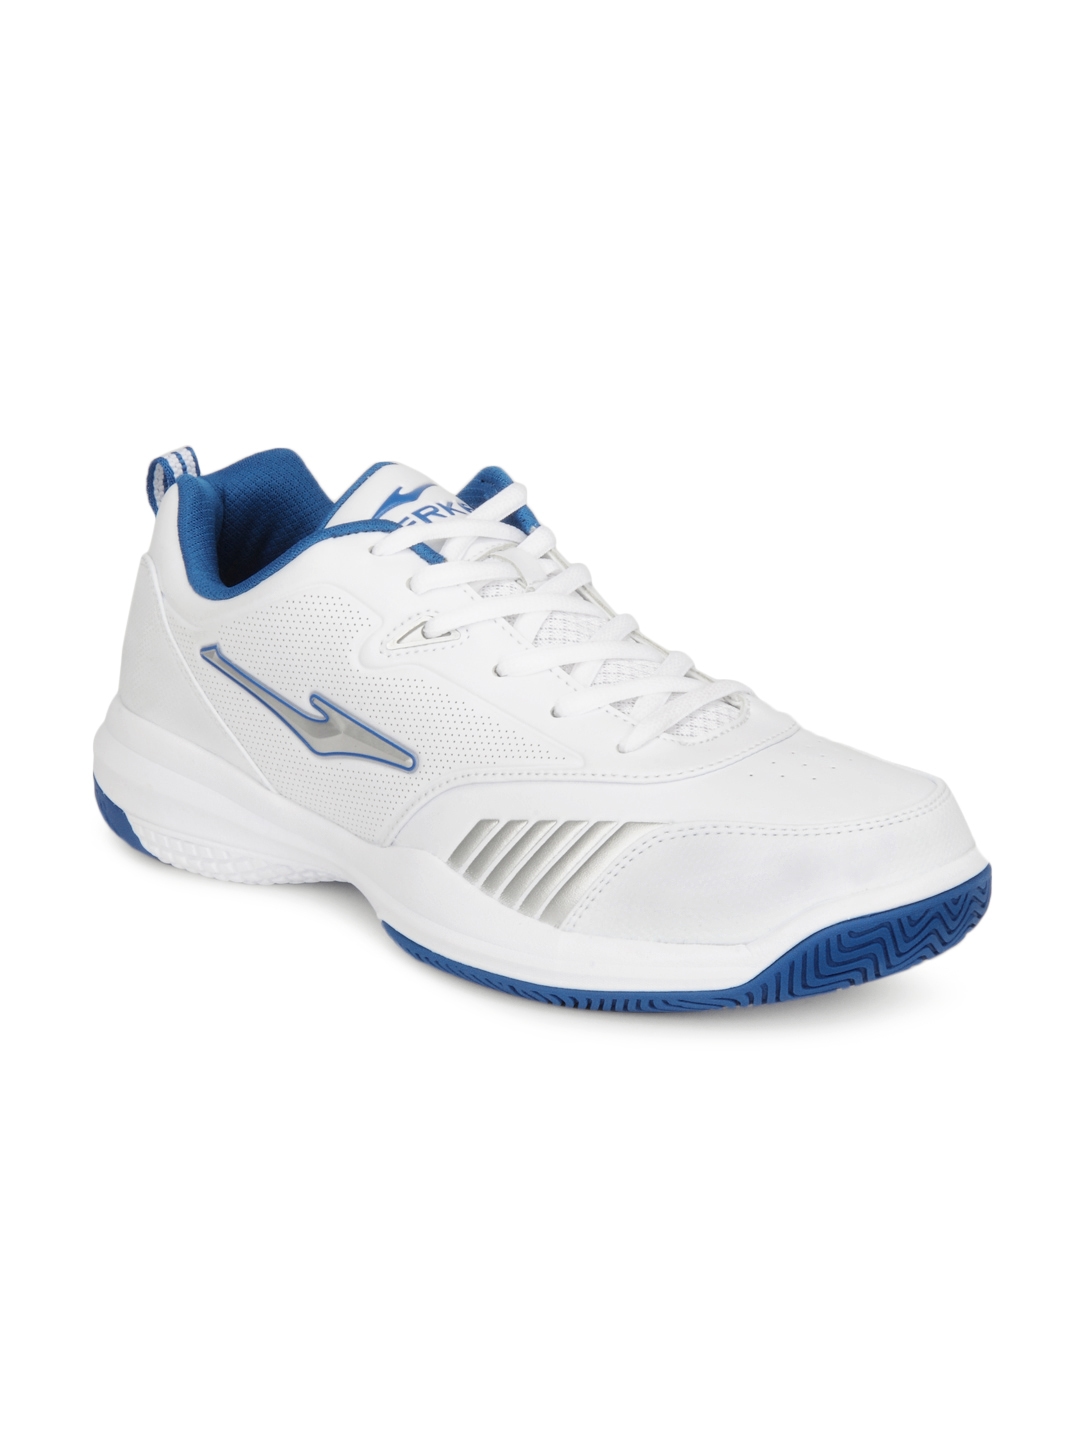 Buy Erke Men White Tennis Shoes 